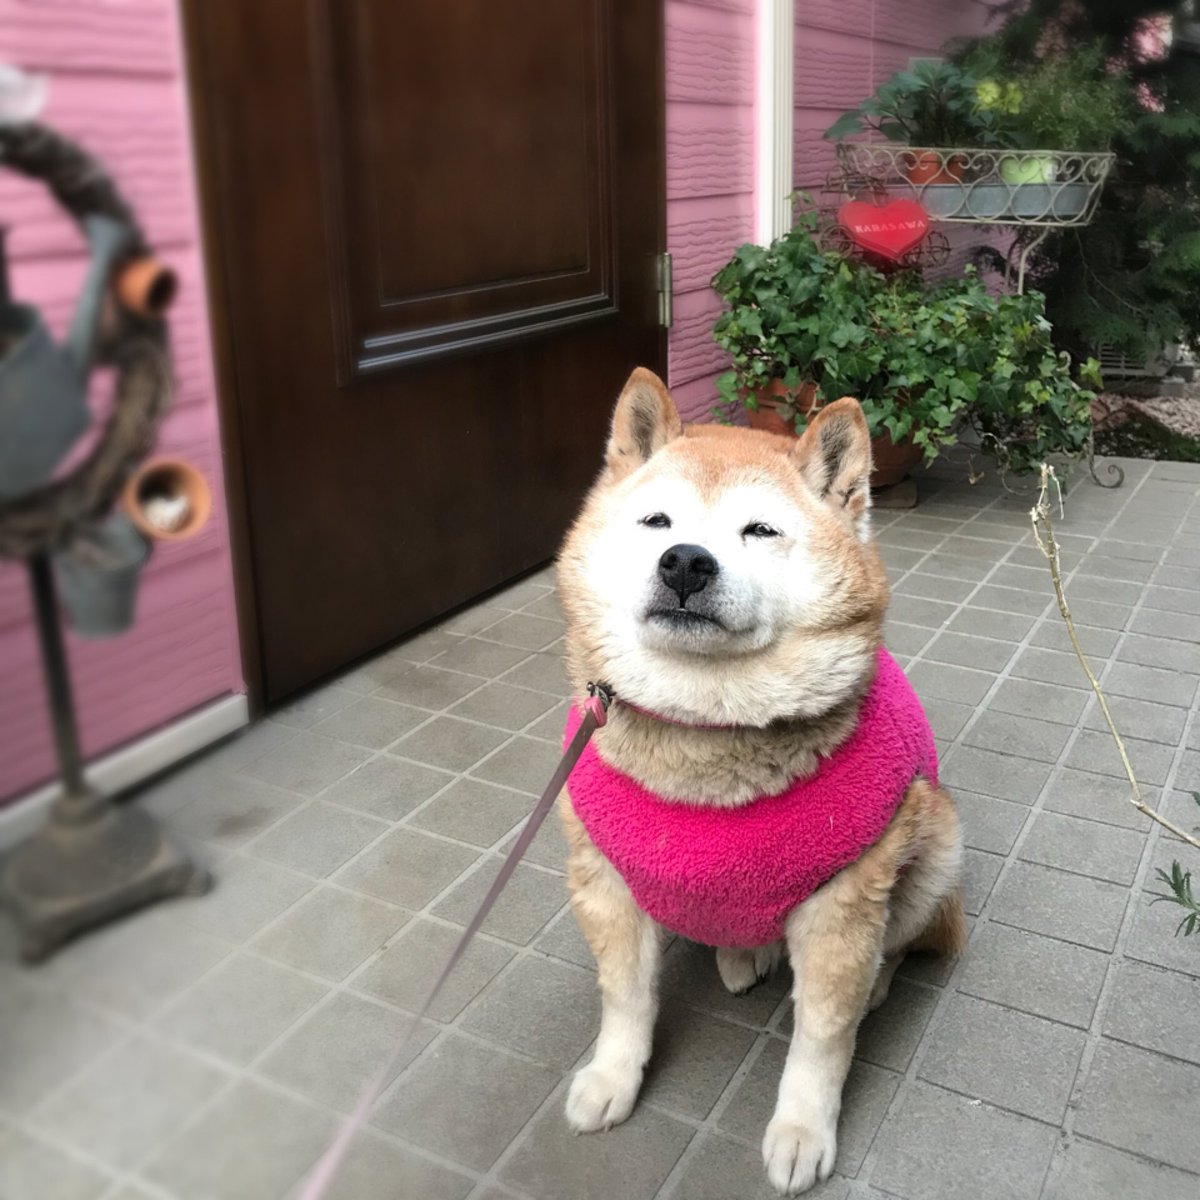 Neri Na Twitteru あんこがちょっと風邪引いてクシュクシュなのでピンクのおべべを着てみました お気に召して得意げですが ぱっつんぱっつんですよ 柴犬サイズって書いてあったんだけど ᵔᴥᵔ 笑 犬 Dog 今日のあんこ 柴 柴犬 Shibainu Shiba あんこ